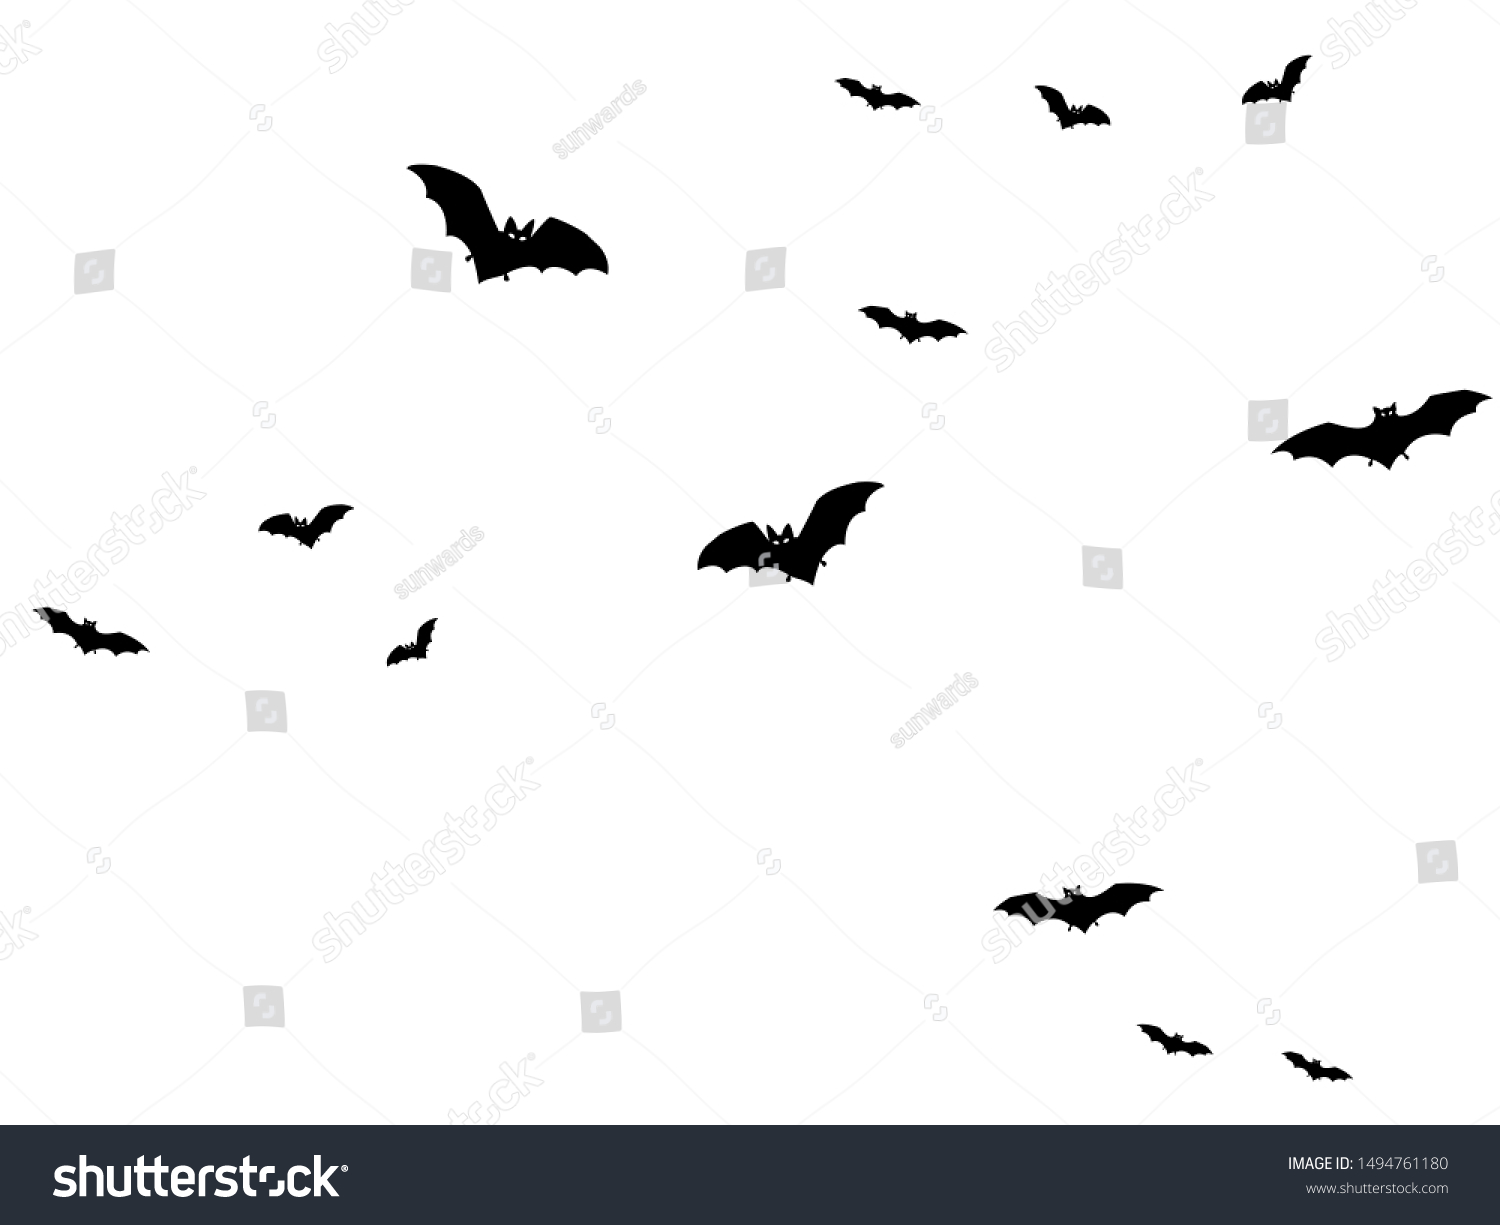 532,714件の「コウモリ」の画像、写真素材、ベクター画像 | Shutterstock